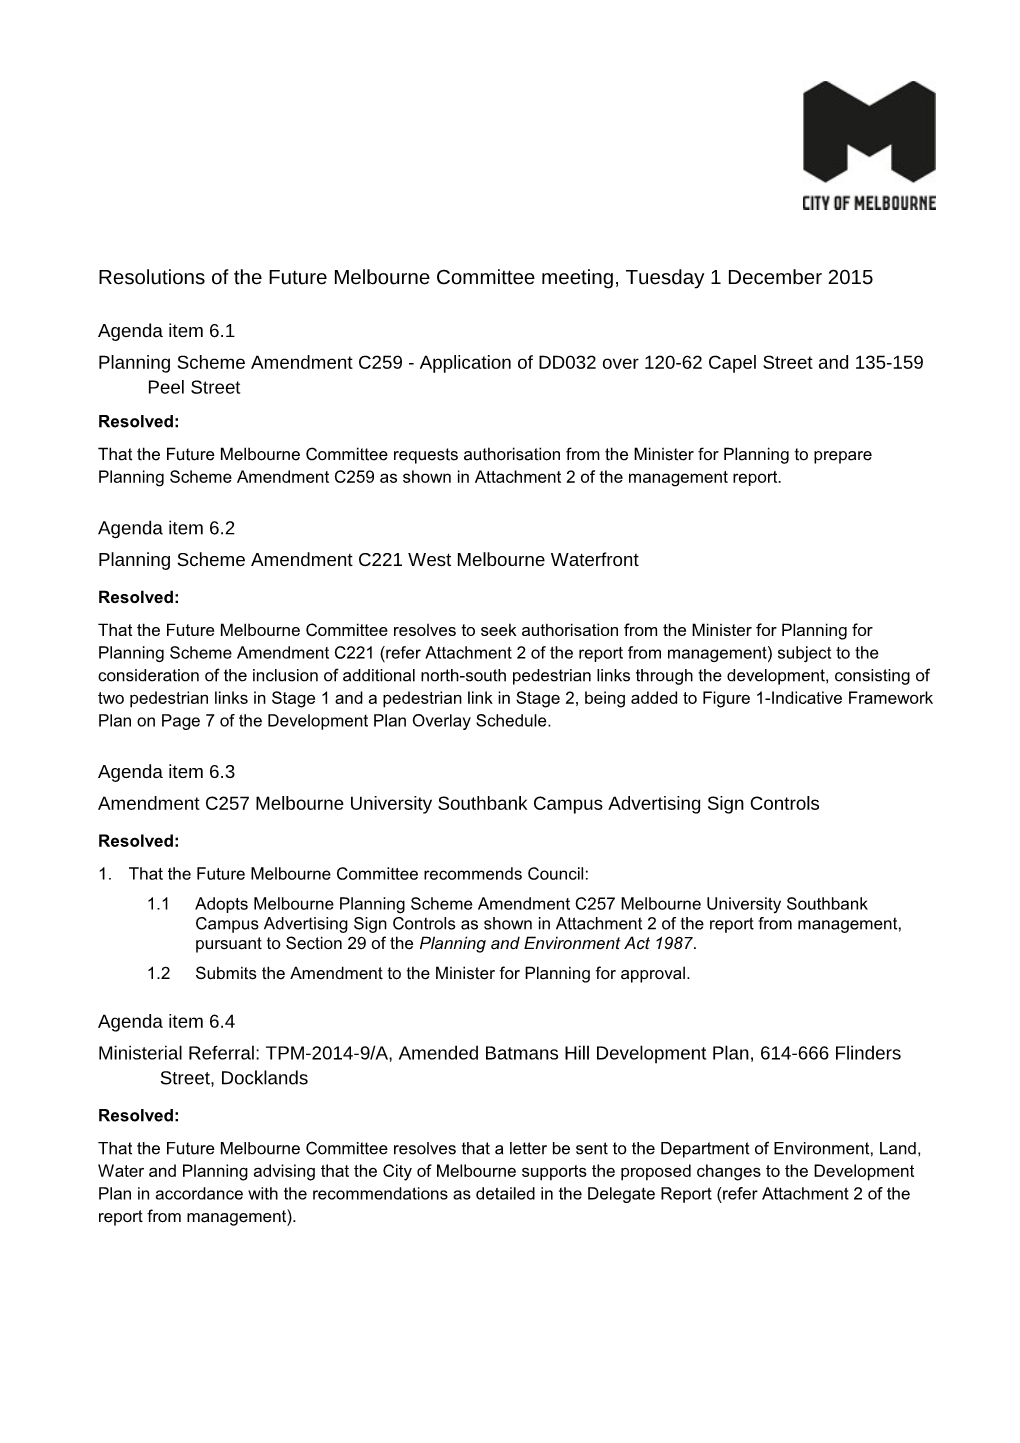 1 December 2015 FMC Meeting Resolutions